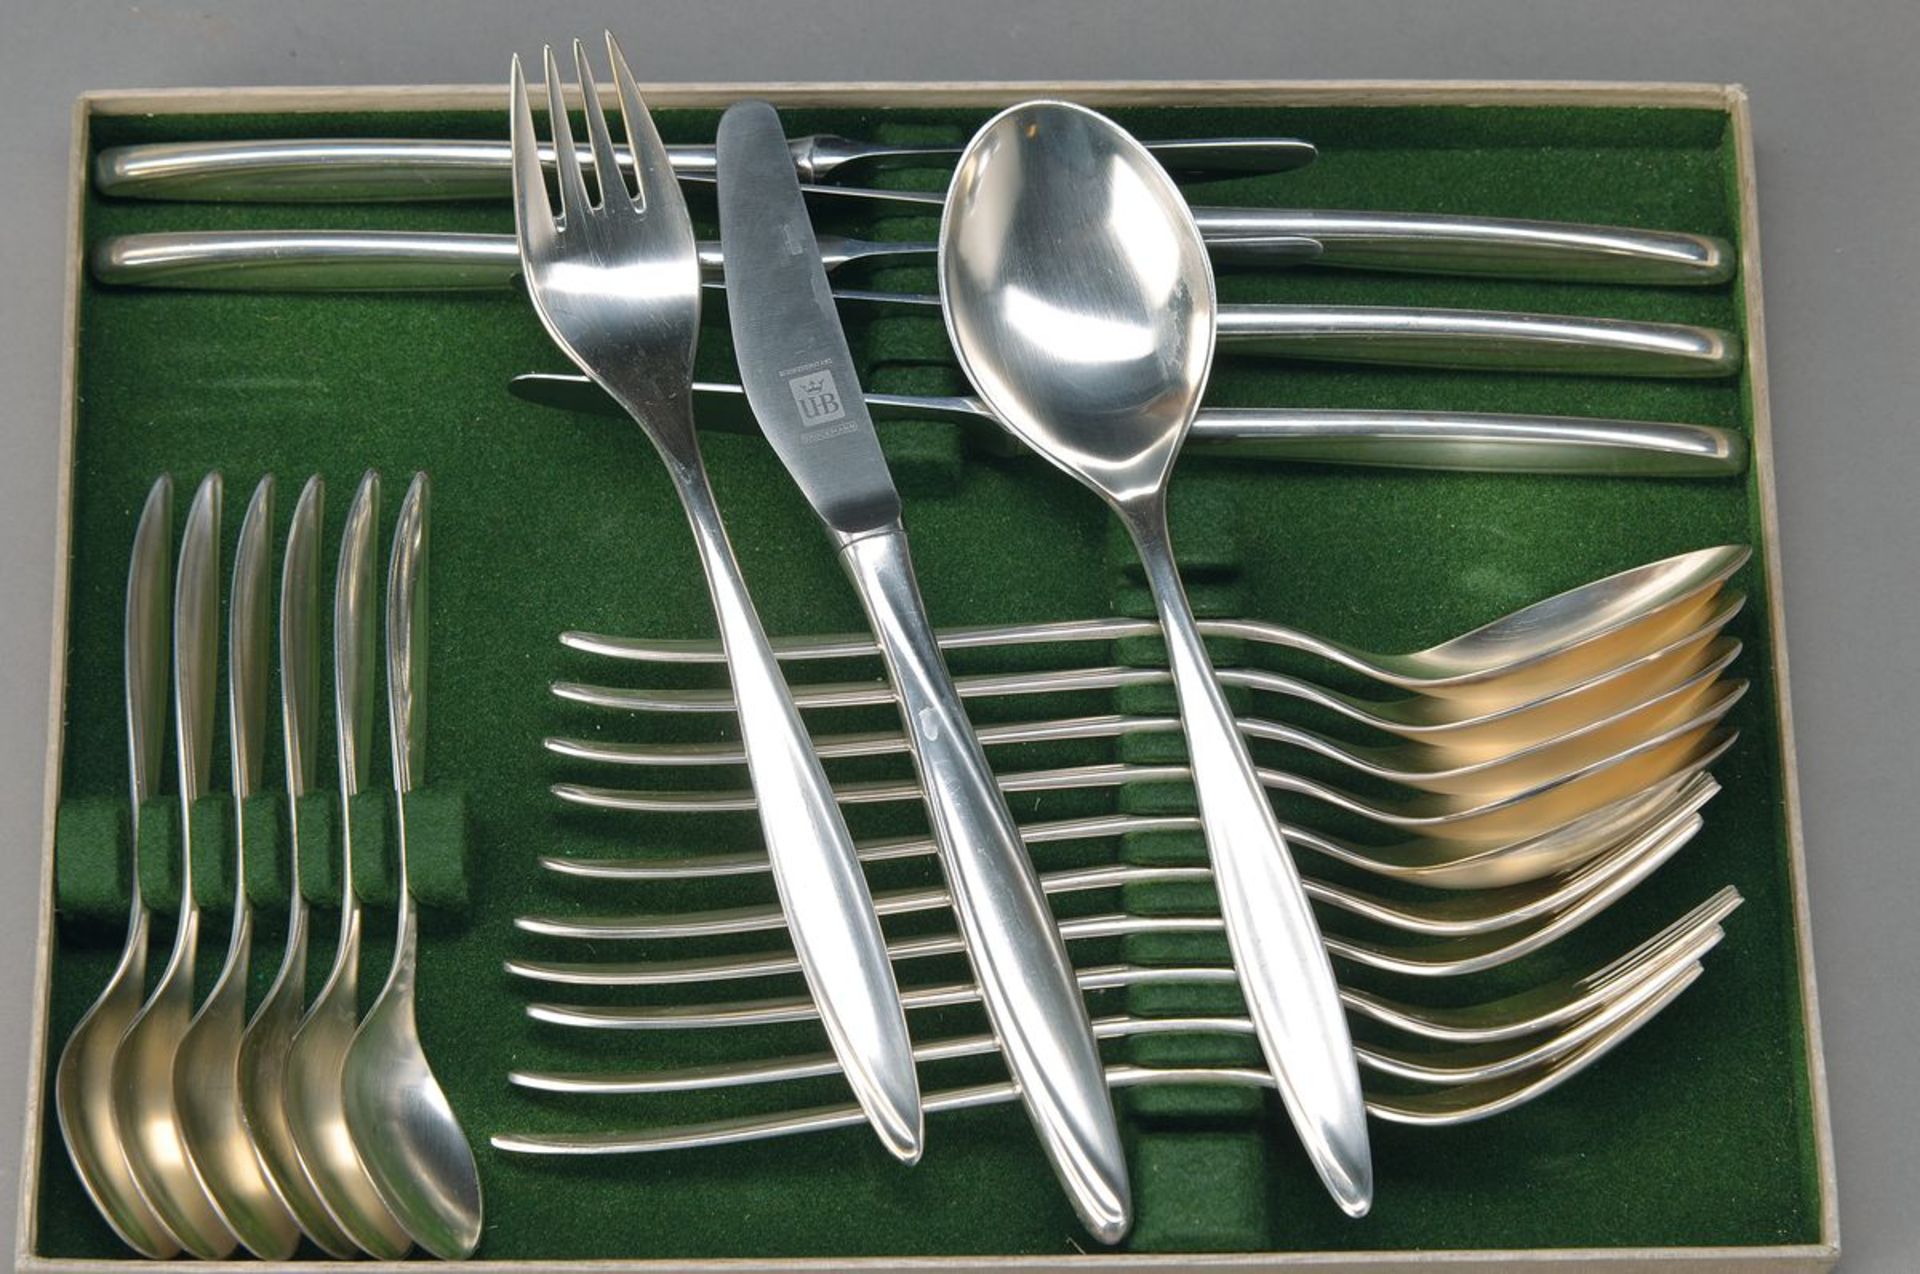 Tafelbesteck für 12 Personen, Bruckmann, 1960er Jahre, 800er Silber, 12 Messer, 12 Gabeln, 12